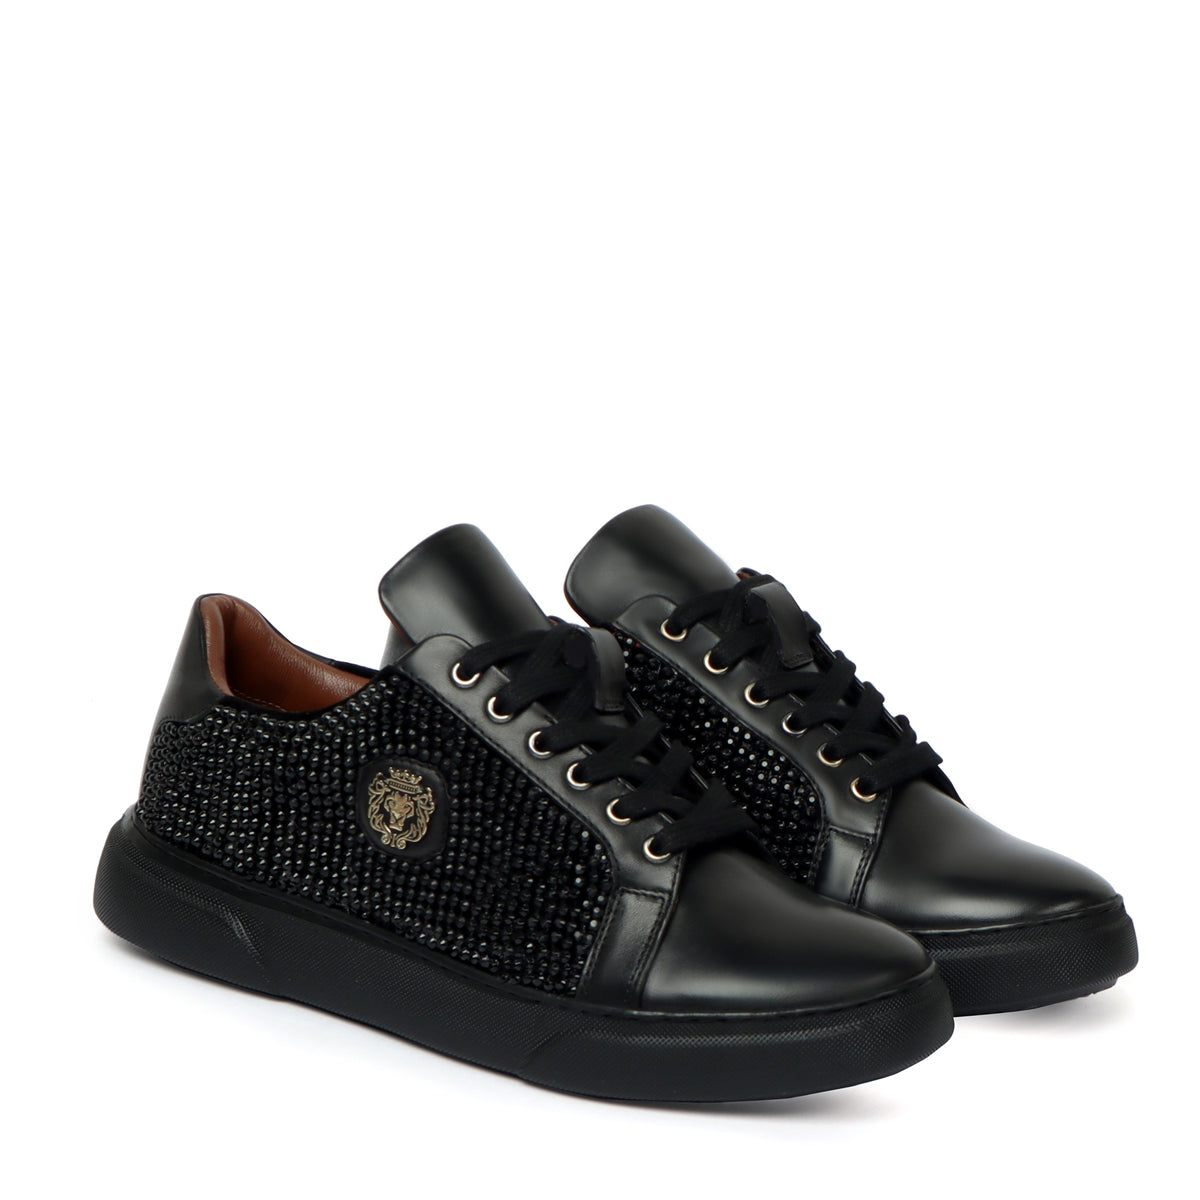 Men's Black Rhinestones black Leather Low Top Sneakers by Brune & Bareskin